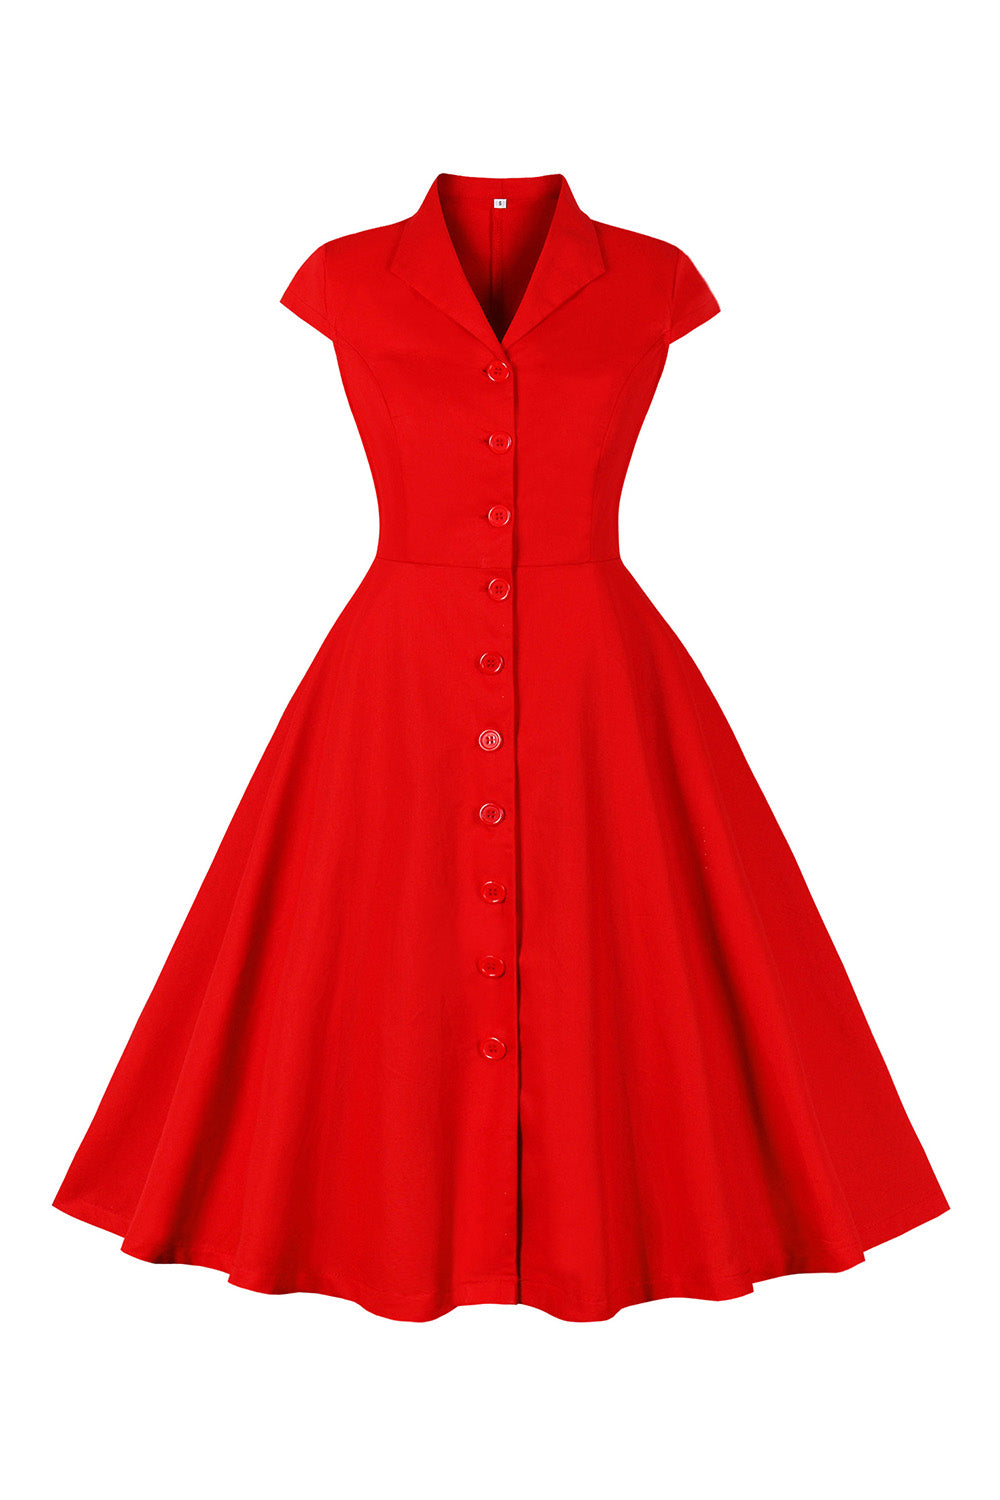 Rød V-hals 1950-tallskjole med korte ermer